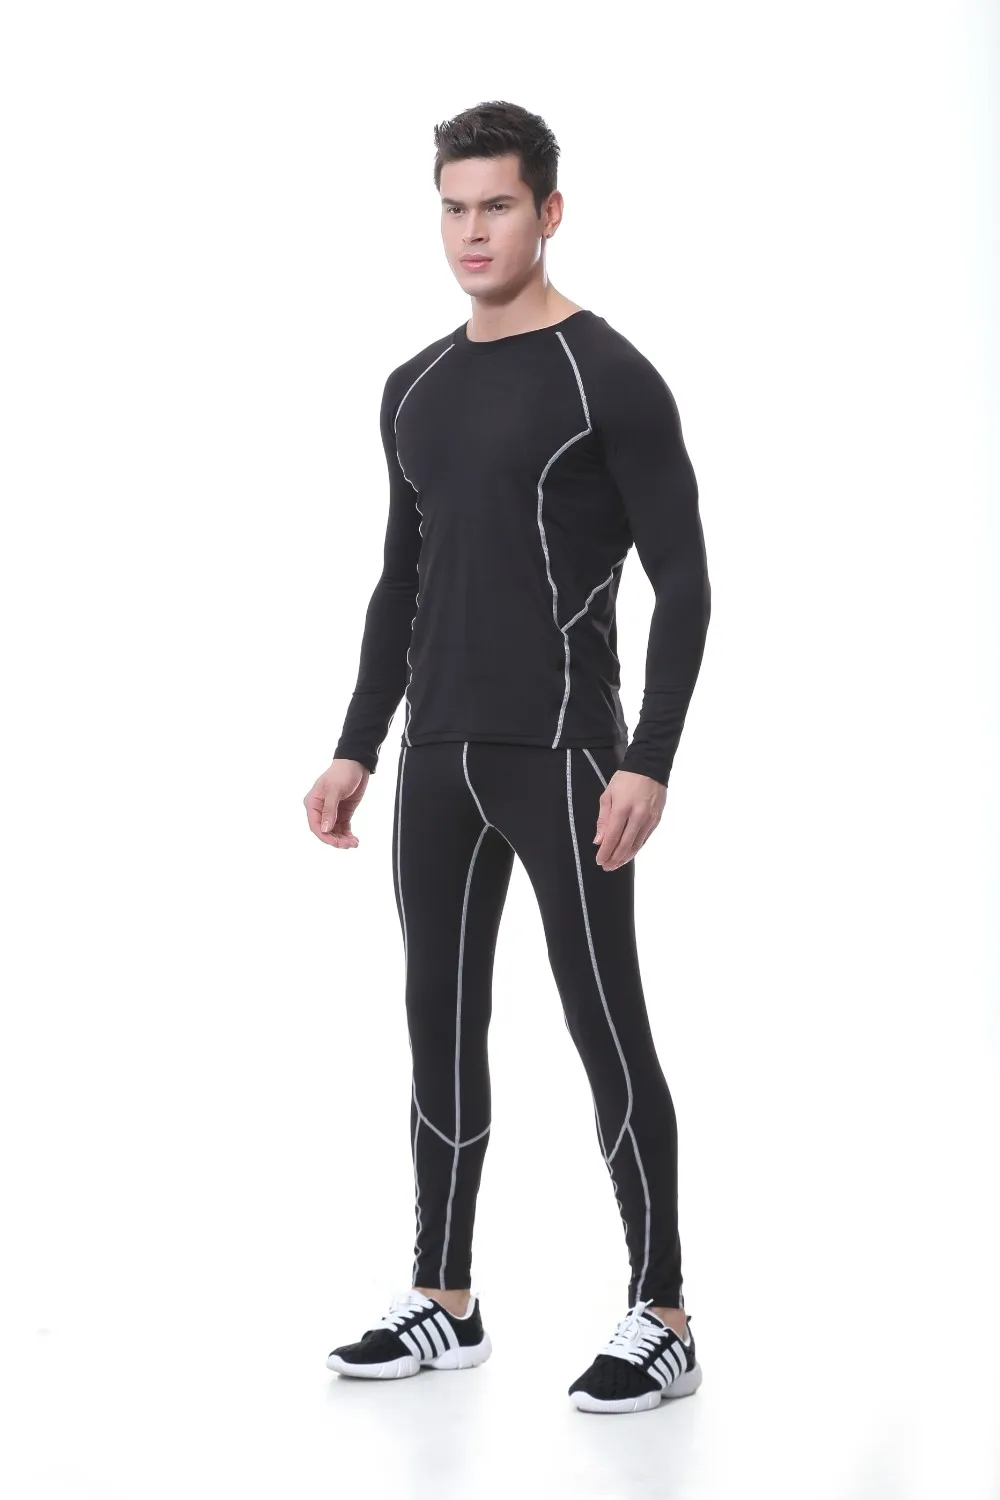 Мужская спортивная одежда для активного отдыха с технологией горячей сушки, для езды на велосипеде, катания на лыжах, зимнее теплое длинное Джерси и термобелье для фитнеса, бархатное нижнее белье